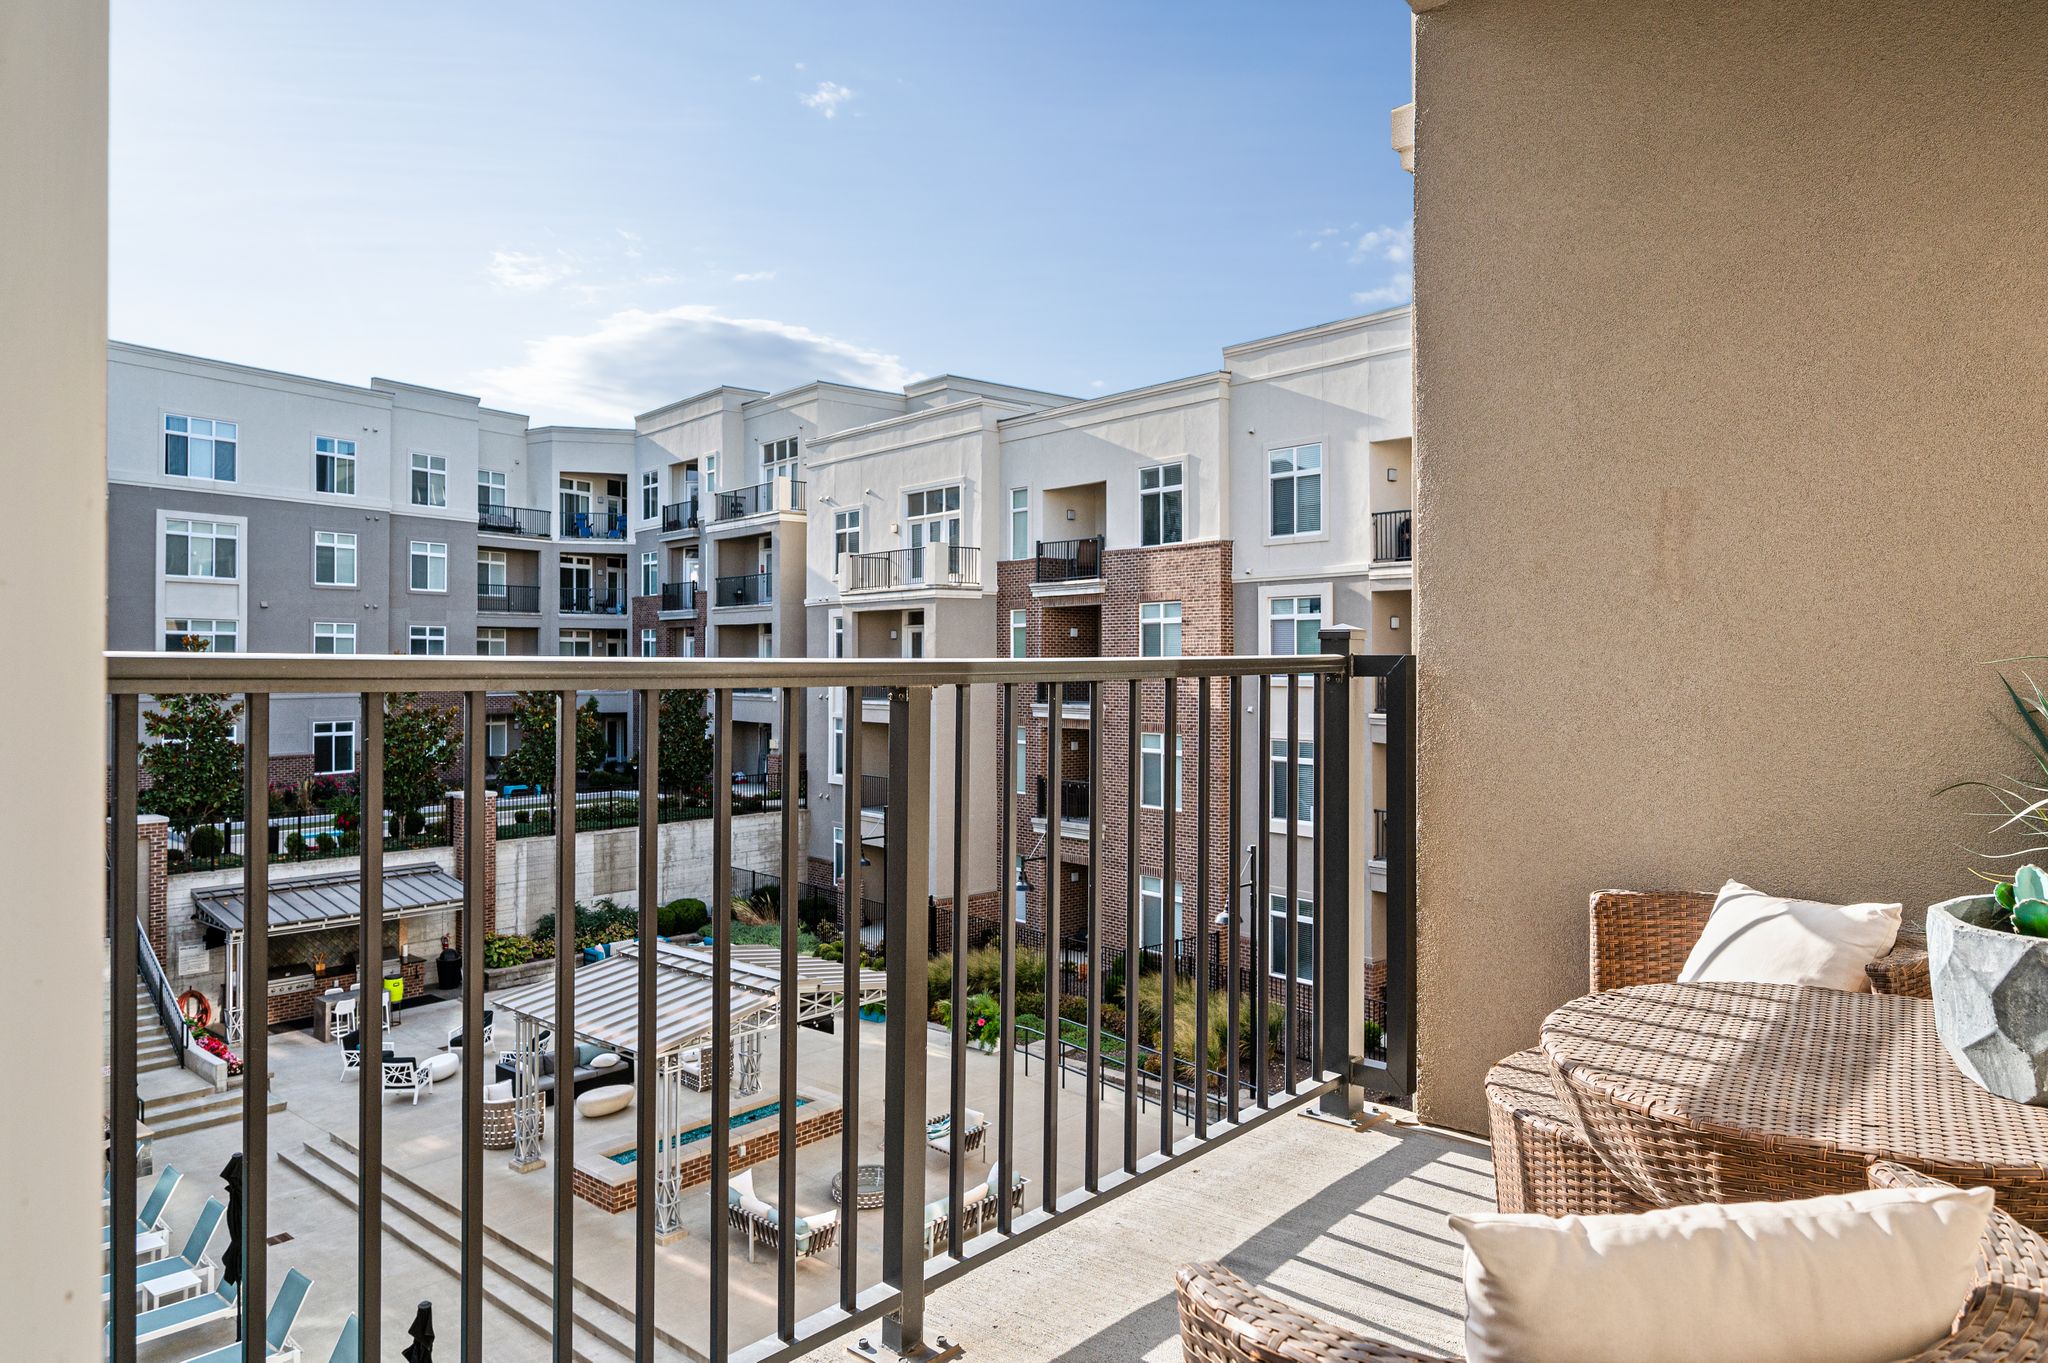 Private Balcony at Domain City Center Luxury Apartments in Lenexa, KS